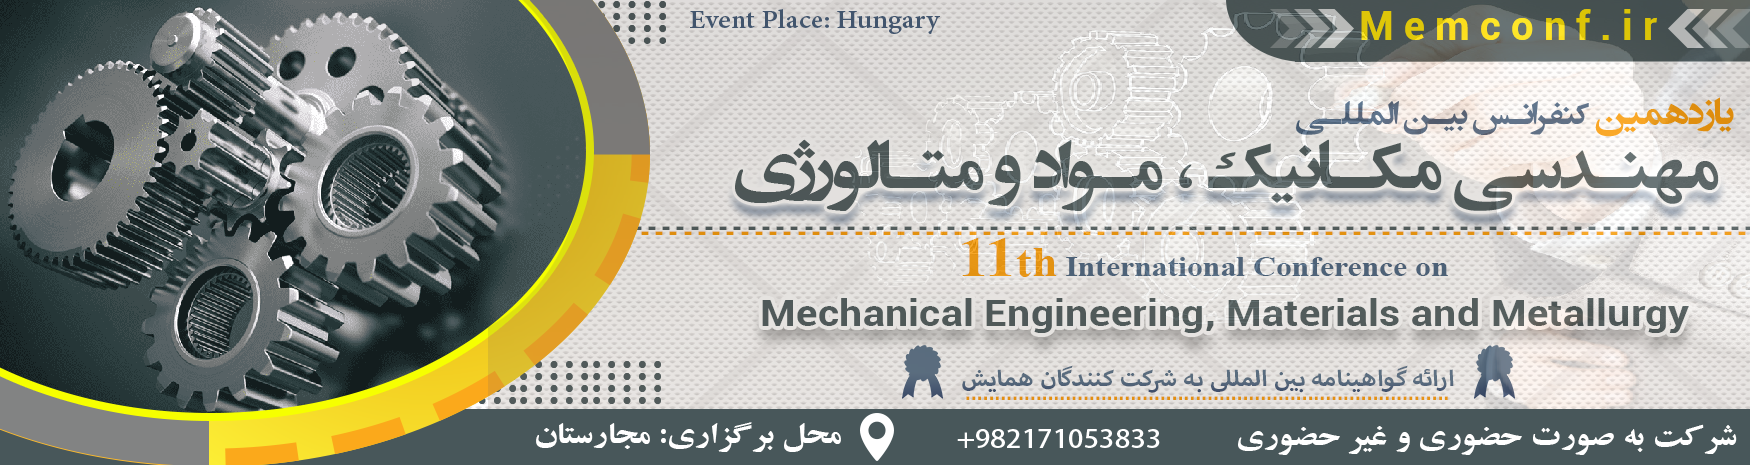 کنفرانس بین المللی مهندسی مکانیک ، مواد و متالورژی